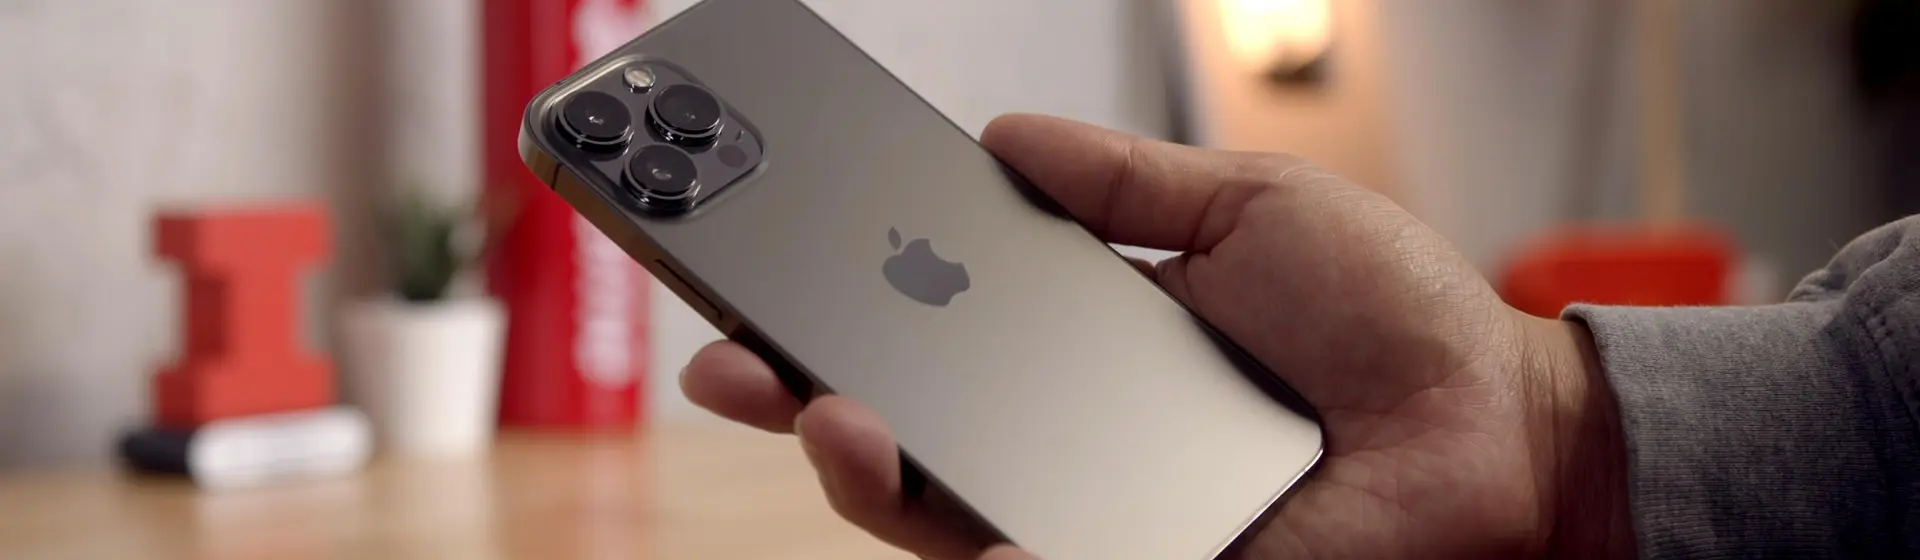 Melhor iPhone 3 câmeras: conheça 6 opções para comprar